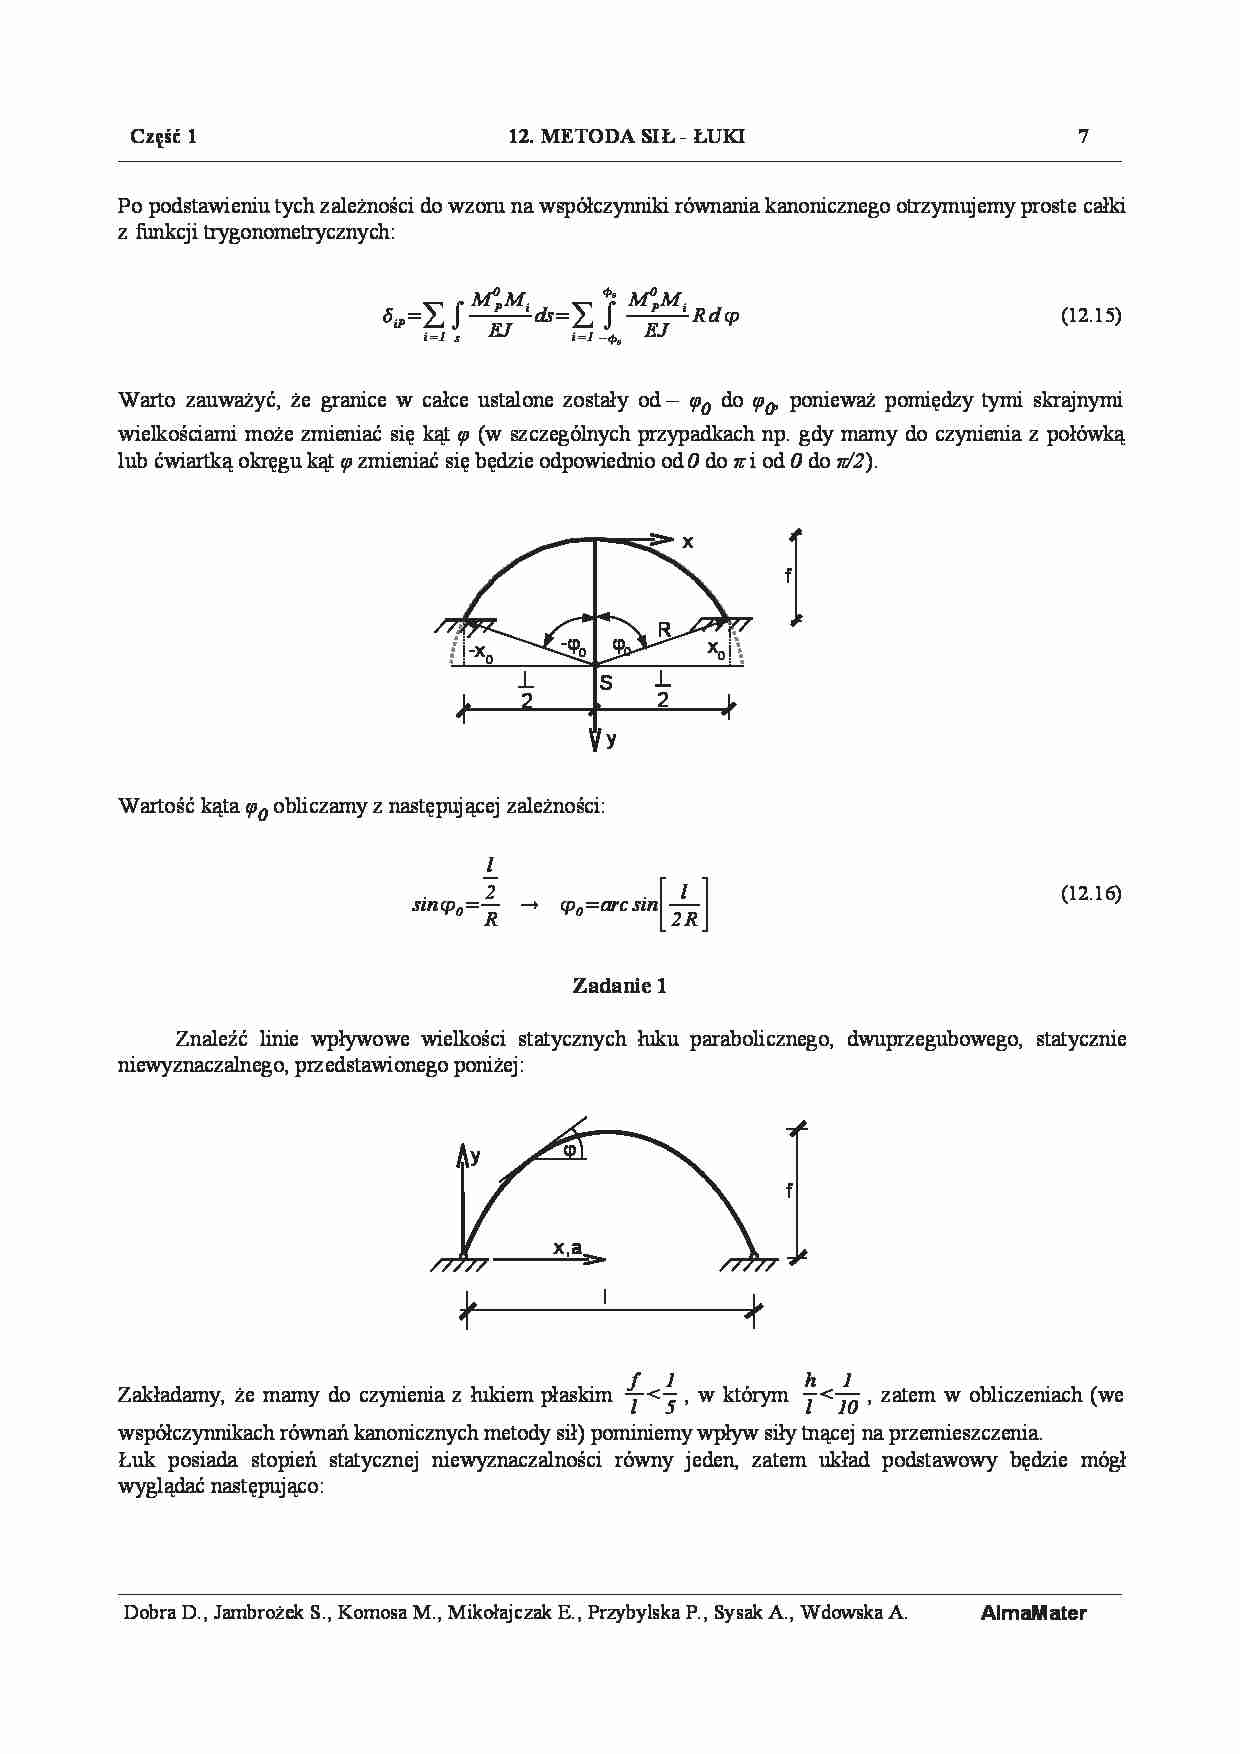 Metoda sił -  Zad 1 - strona 1